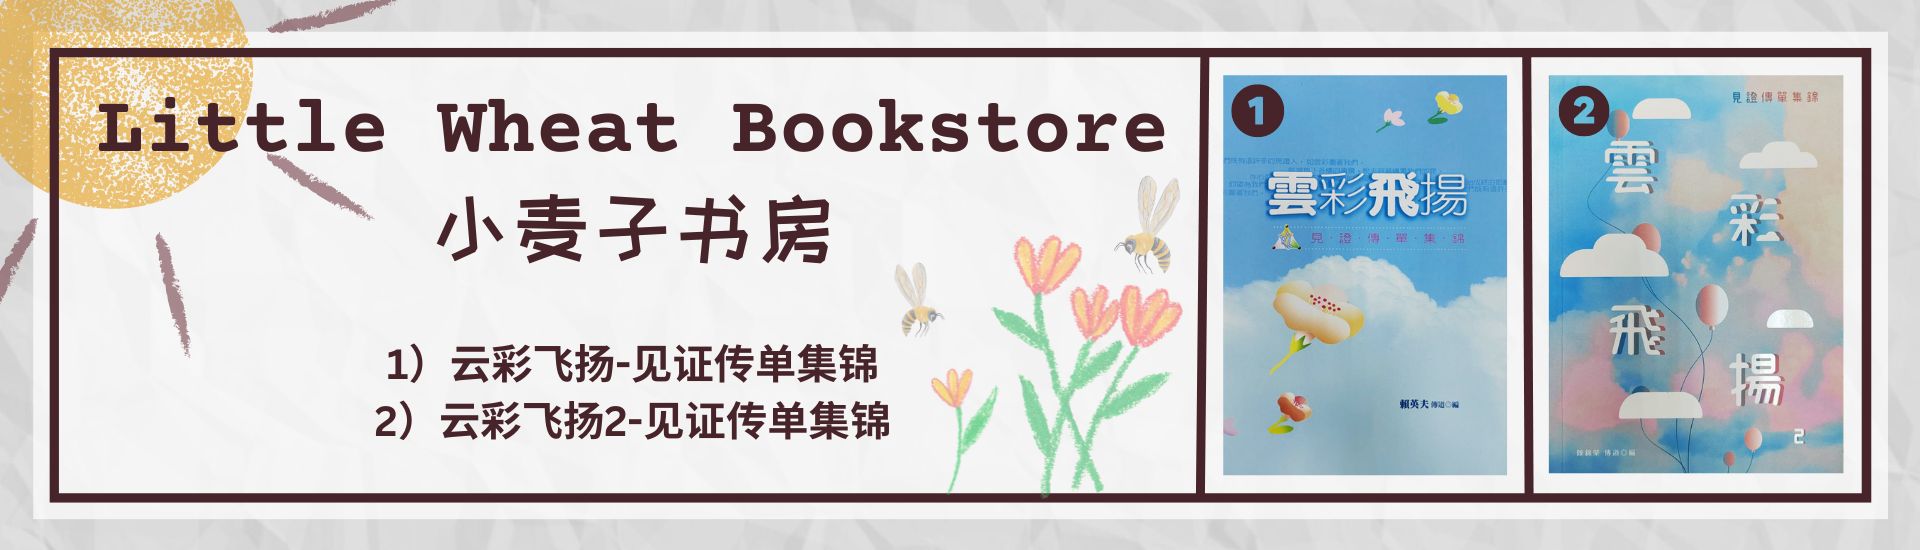 Little Wheat Bookstore 小麦子书房